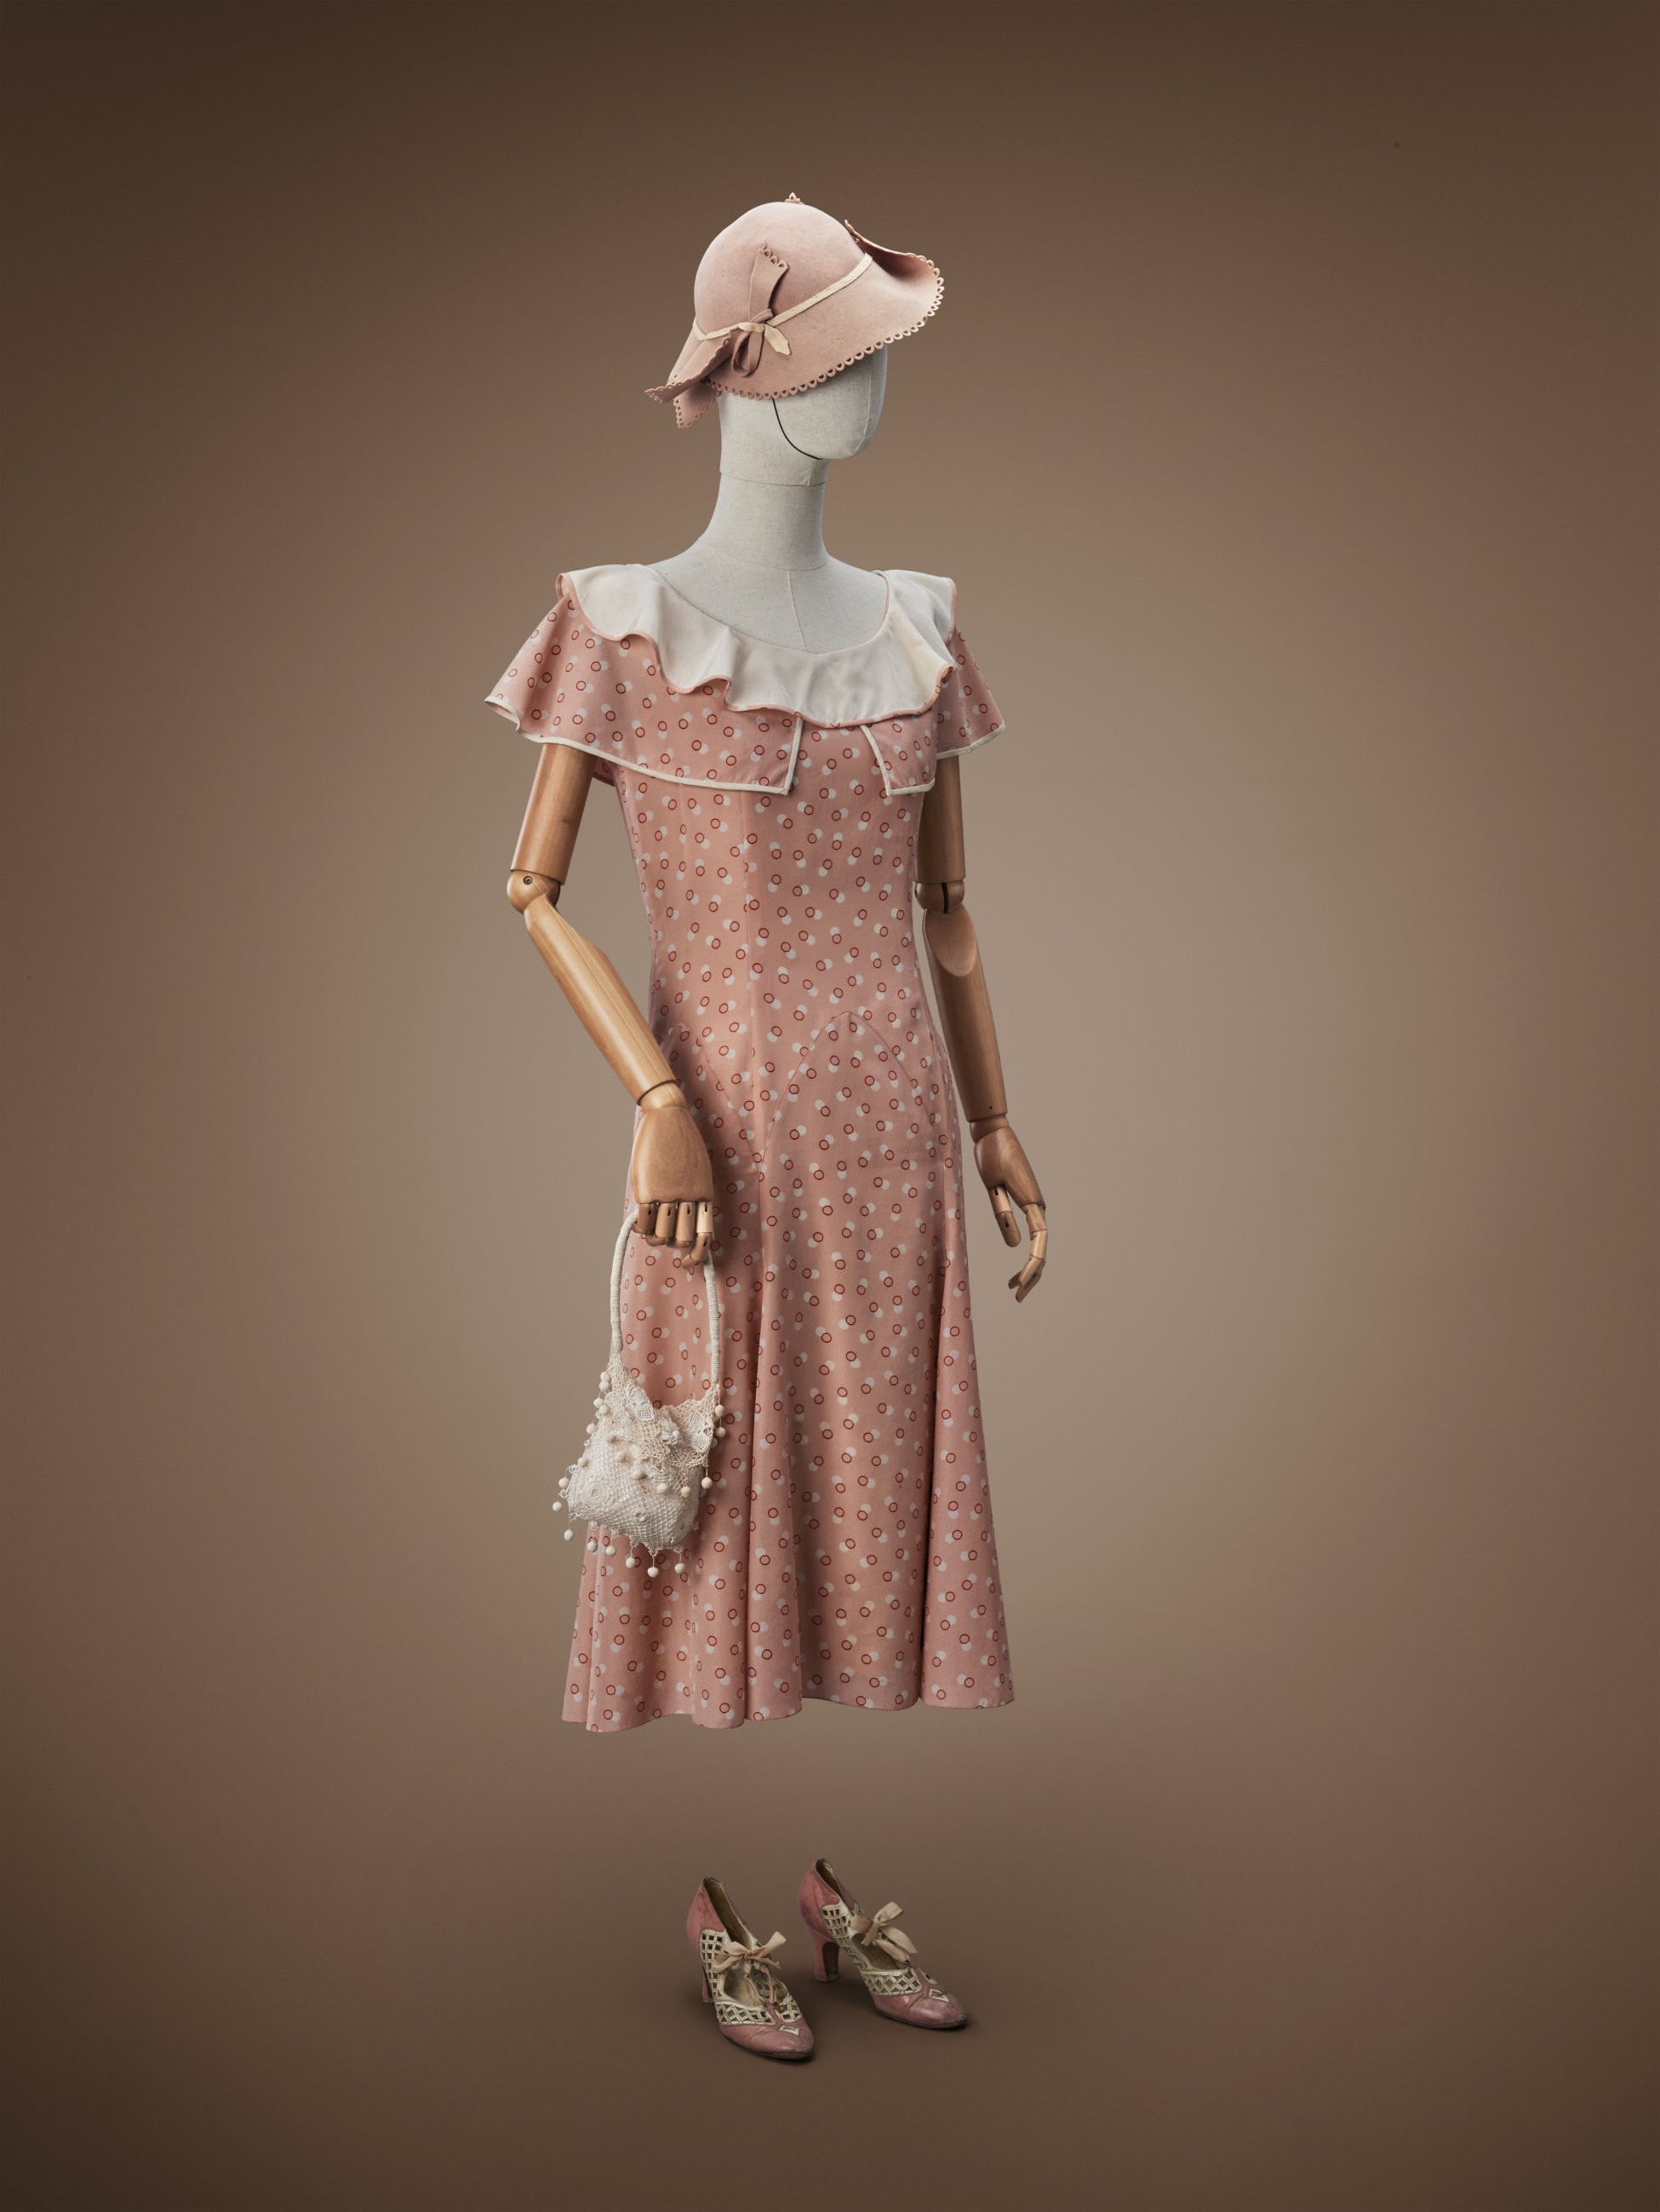 1930s Femme robe de jour - La compagnie du costume